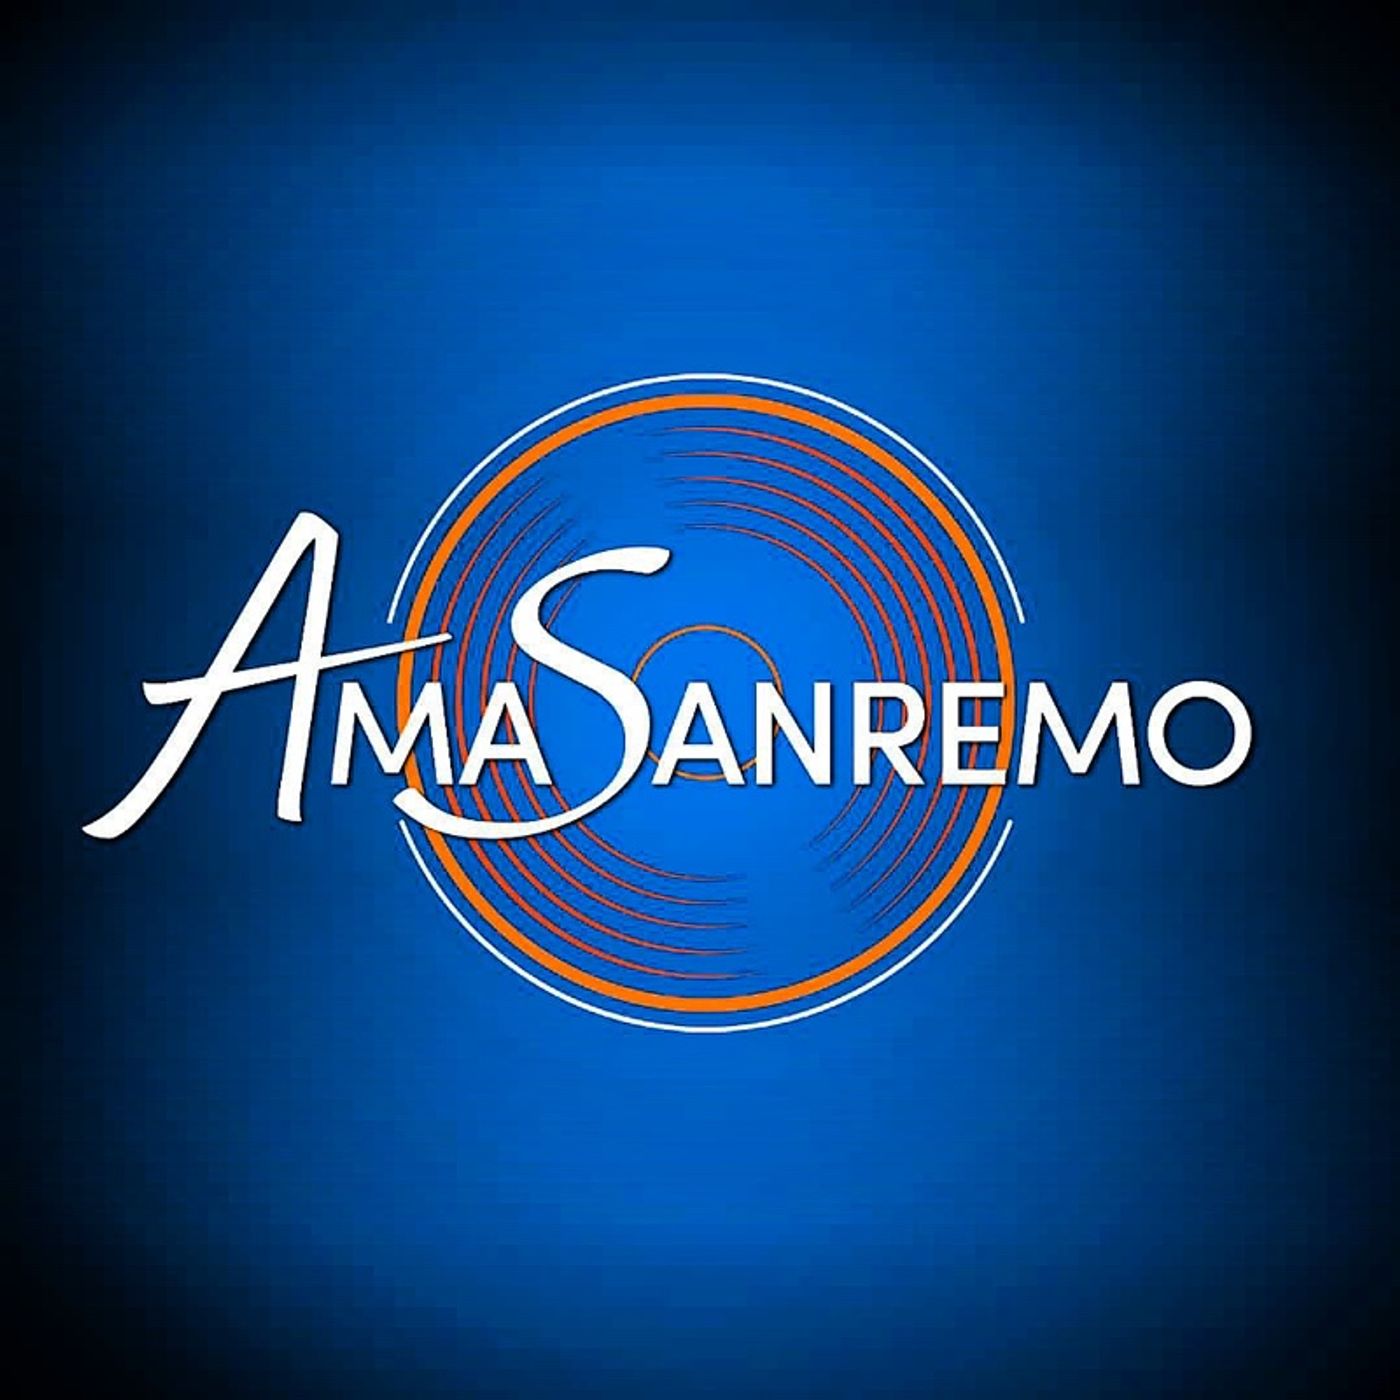 Sanremo 2021 - le canzoni di AMASANREMO